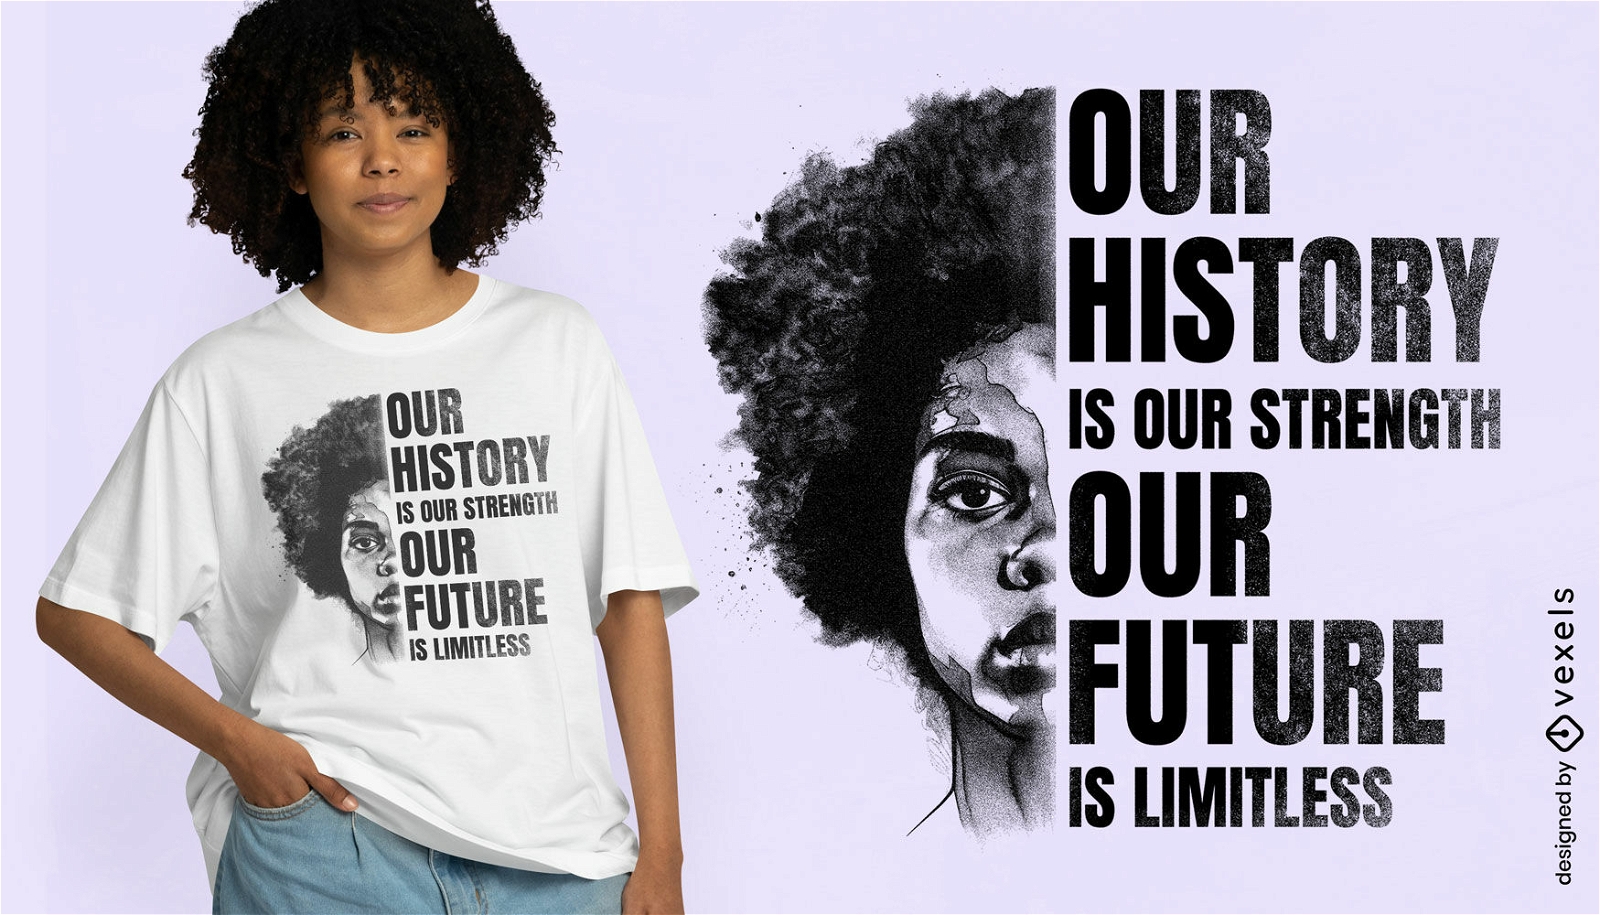 Capacitando o design de camisetas com citações históricas